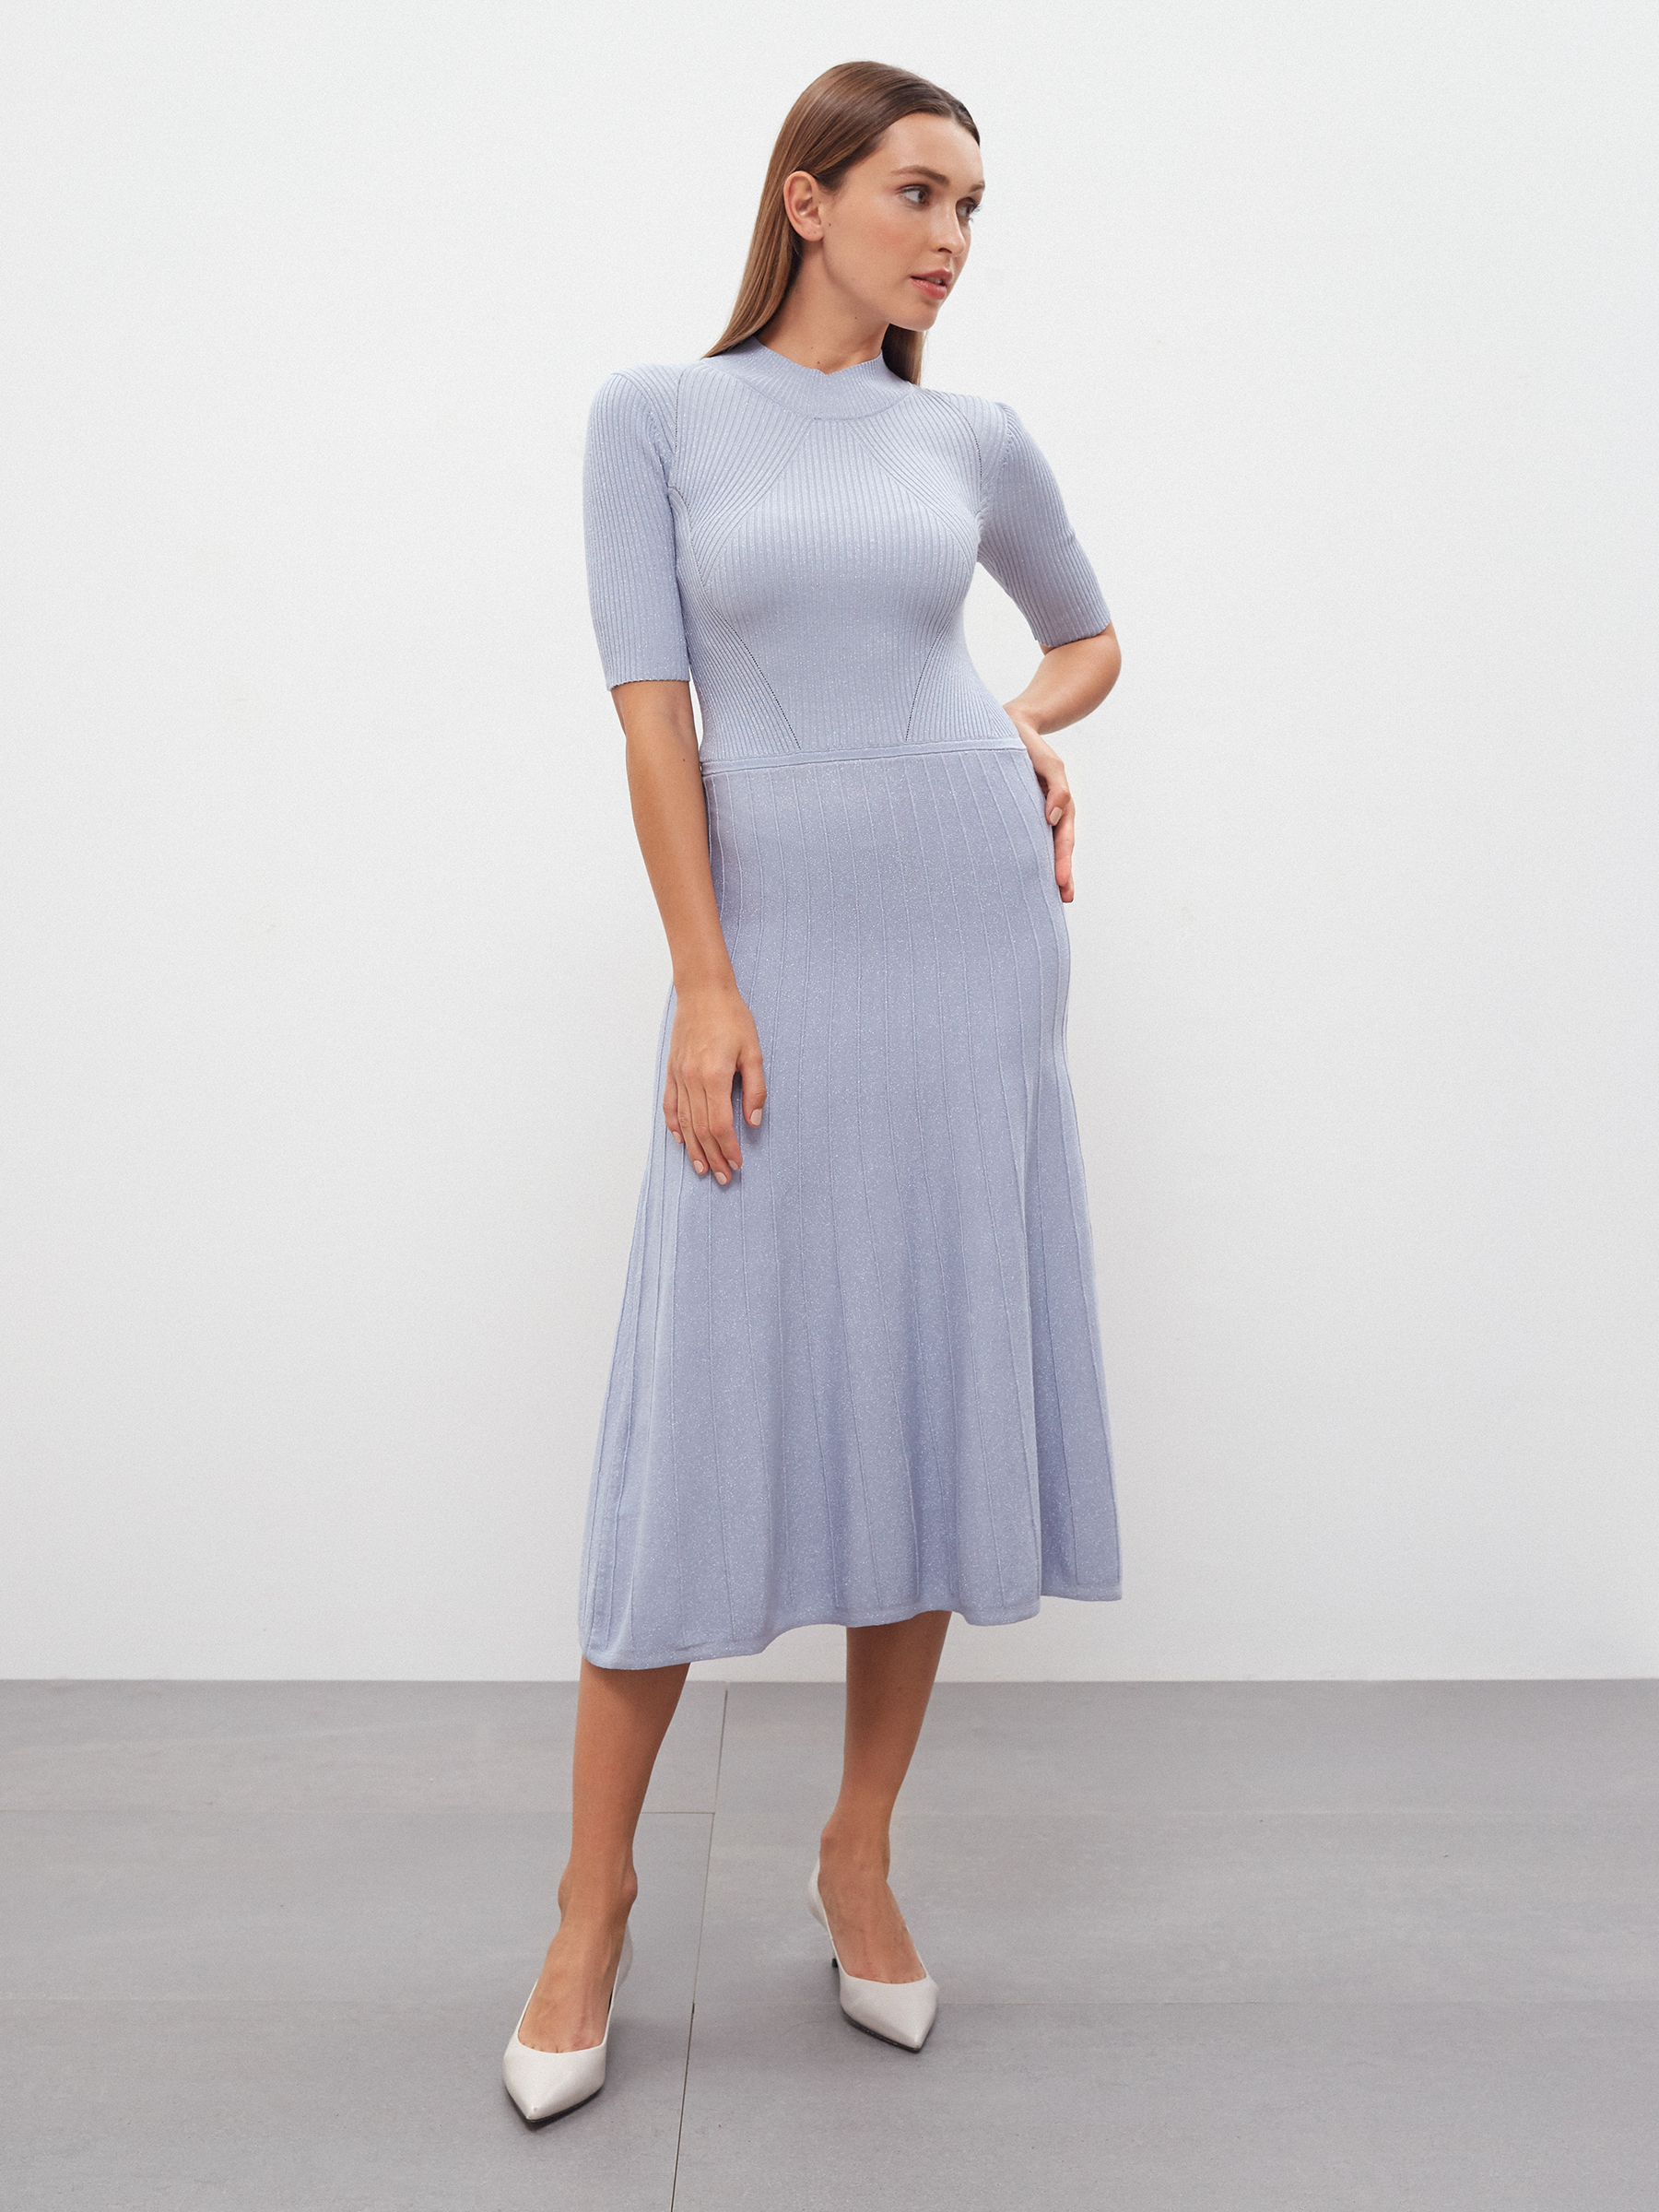 Платье женское Consowear KDM 220656 голубое 42 RU